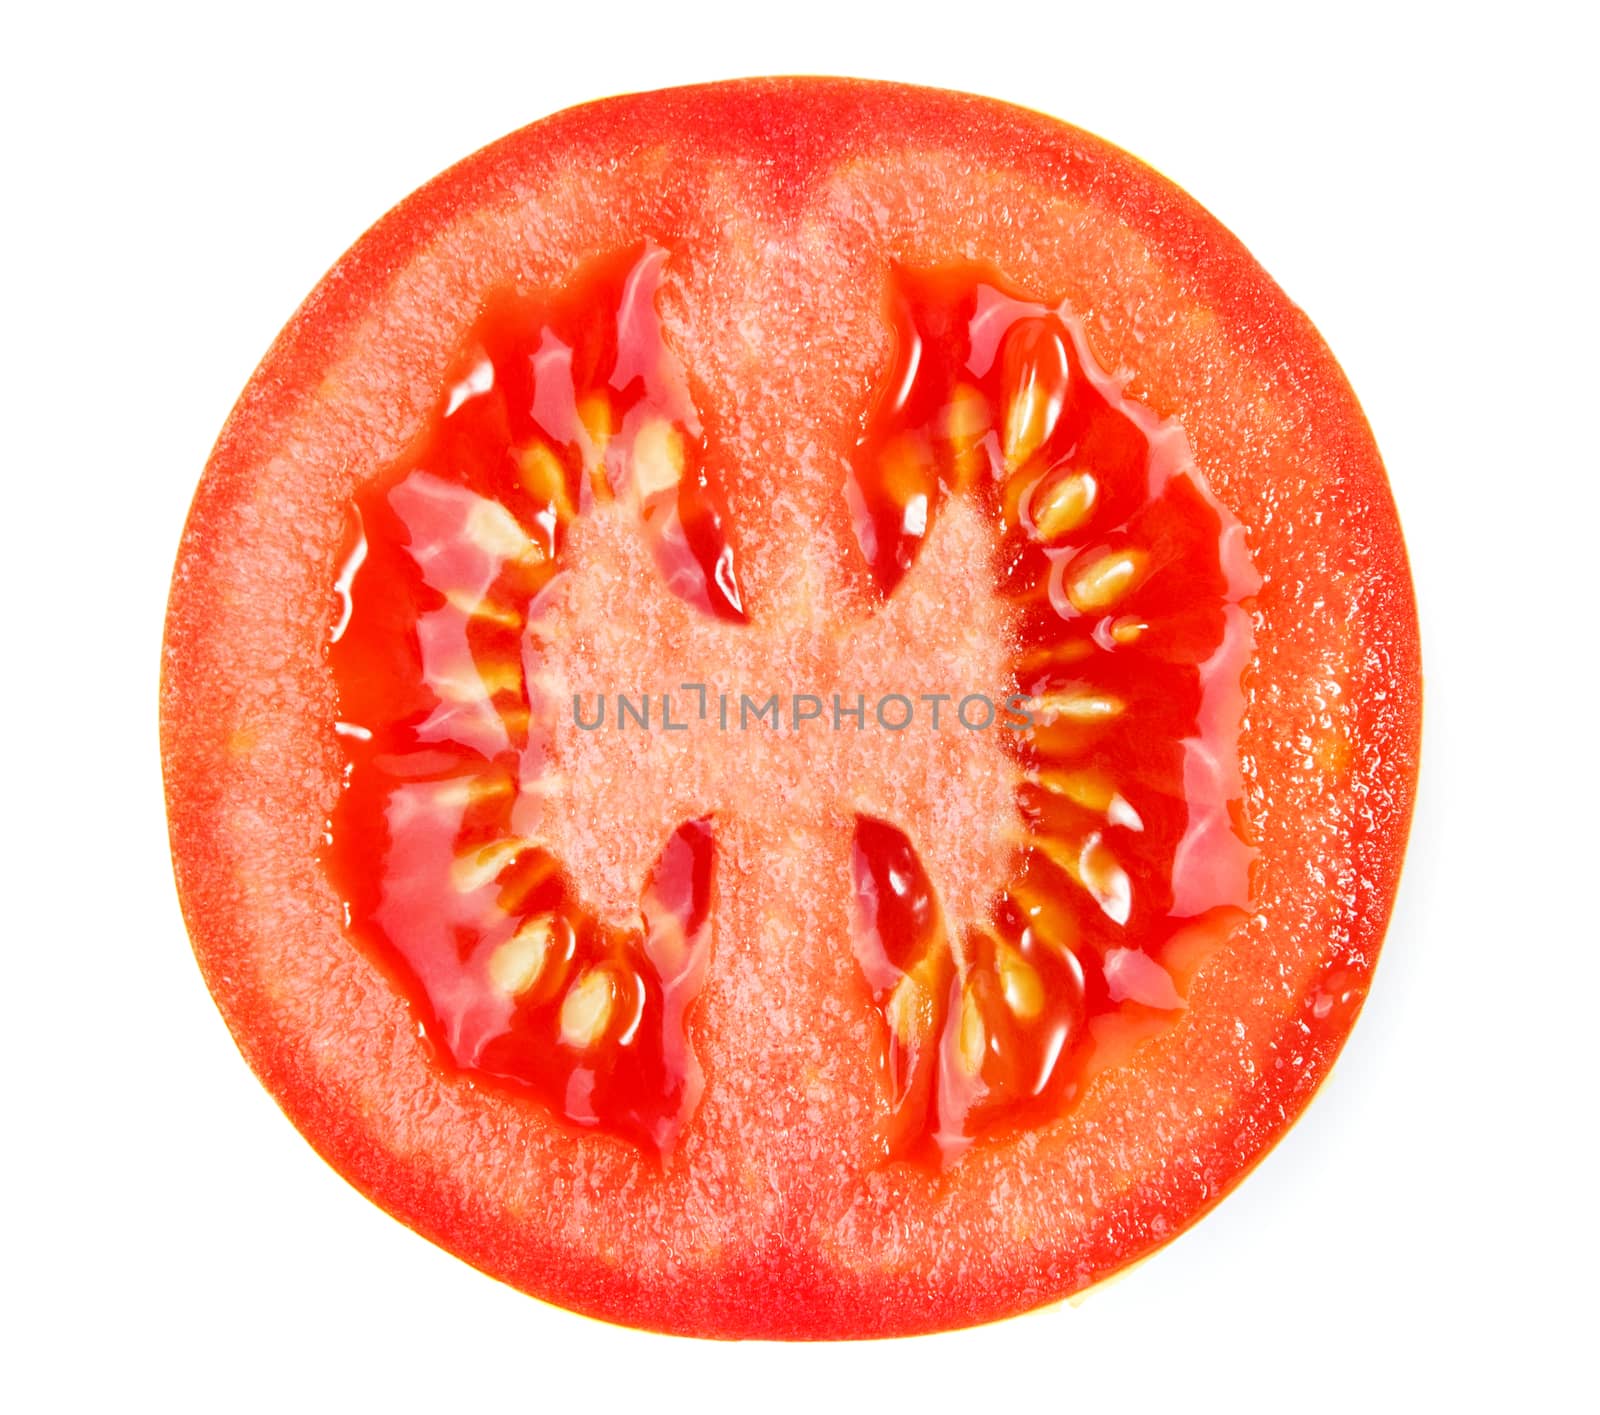 Slice of tomato by Valengilda